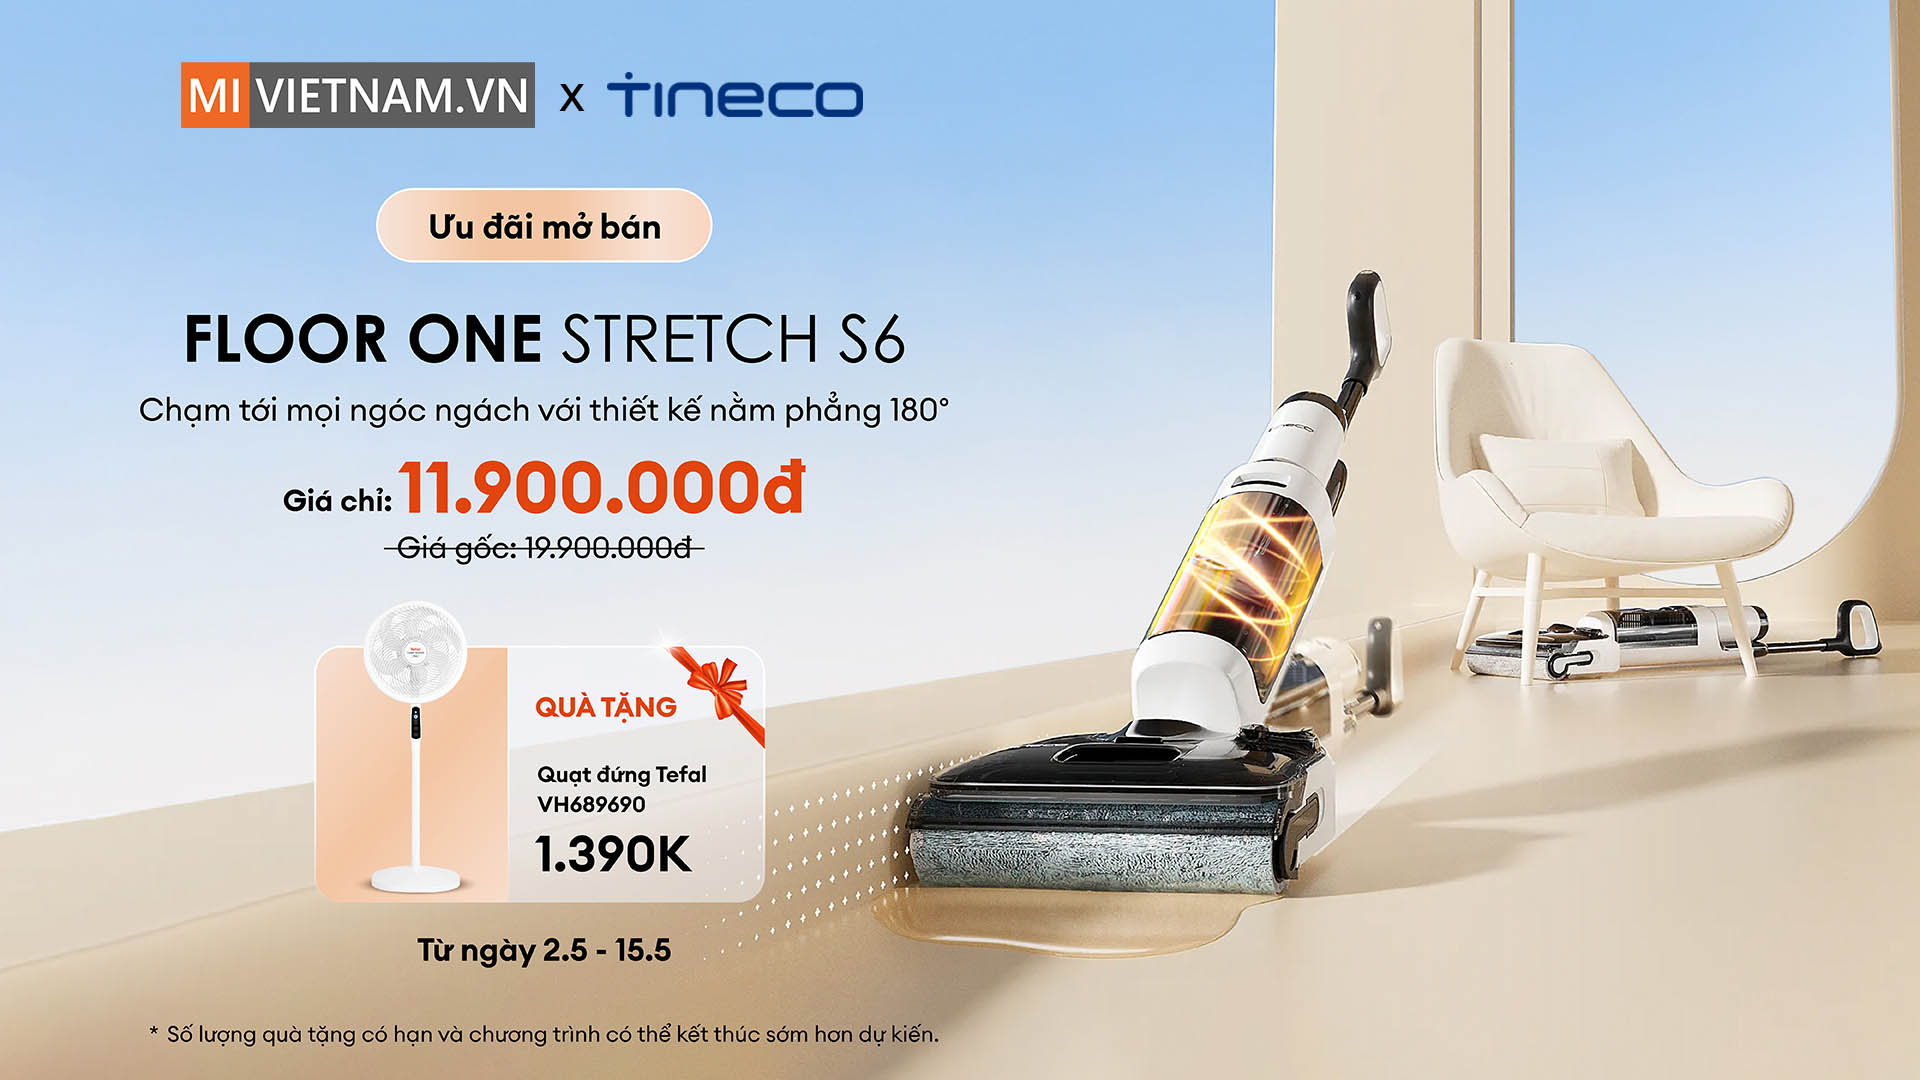 Tineco Floor One Stretch S6